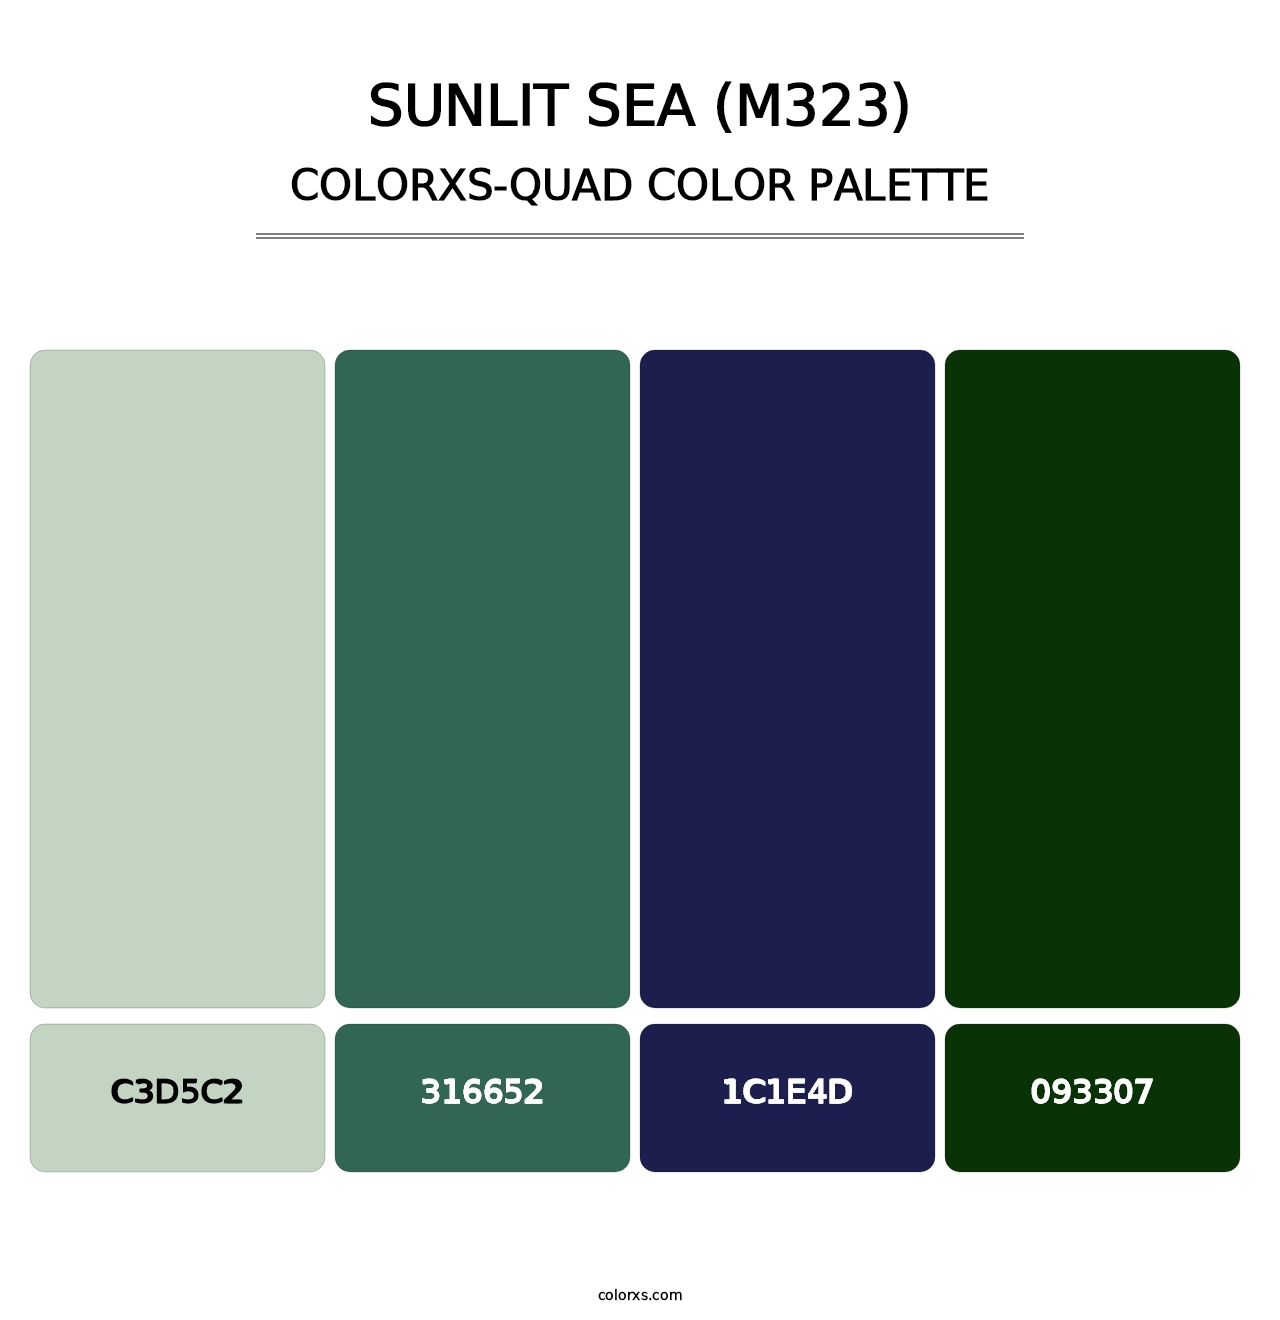 Sunlit Sea (M323) - Colorxs Quad Palette